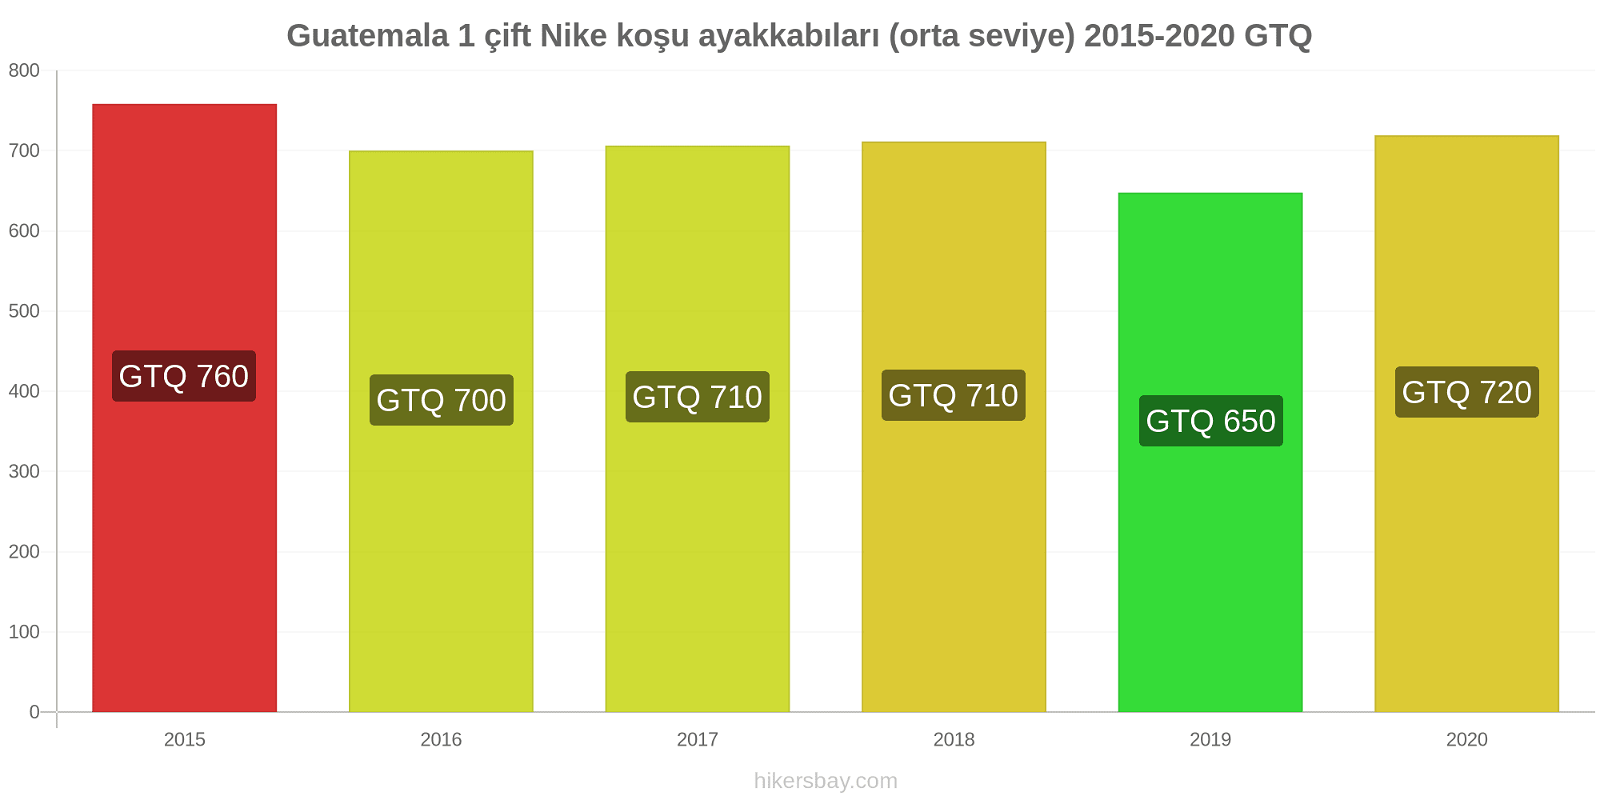 Guatemala fiyat değişiklikleri 1 çift Nike koşu ayakkabıları (orta seviye) hikersbay.com